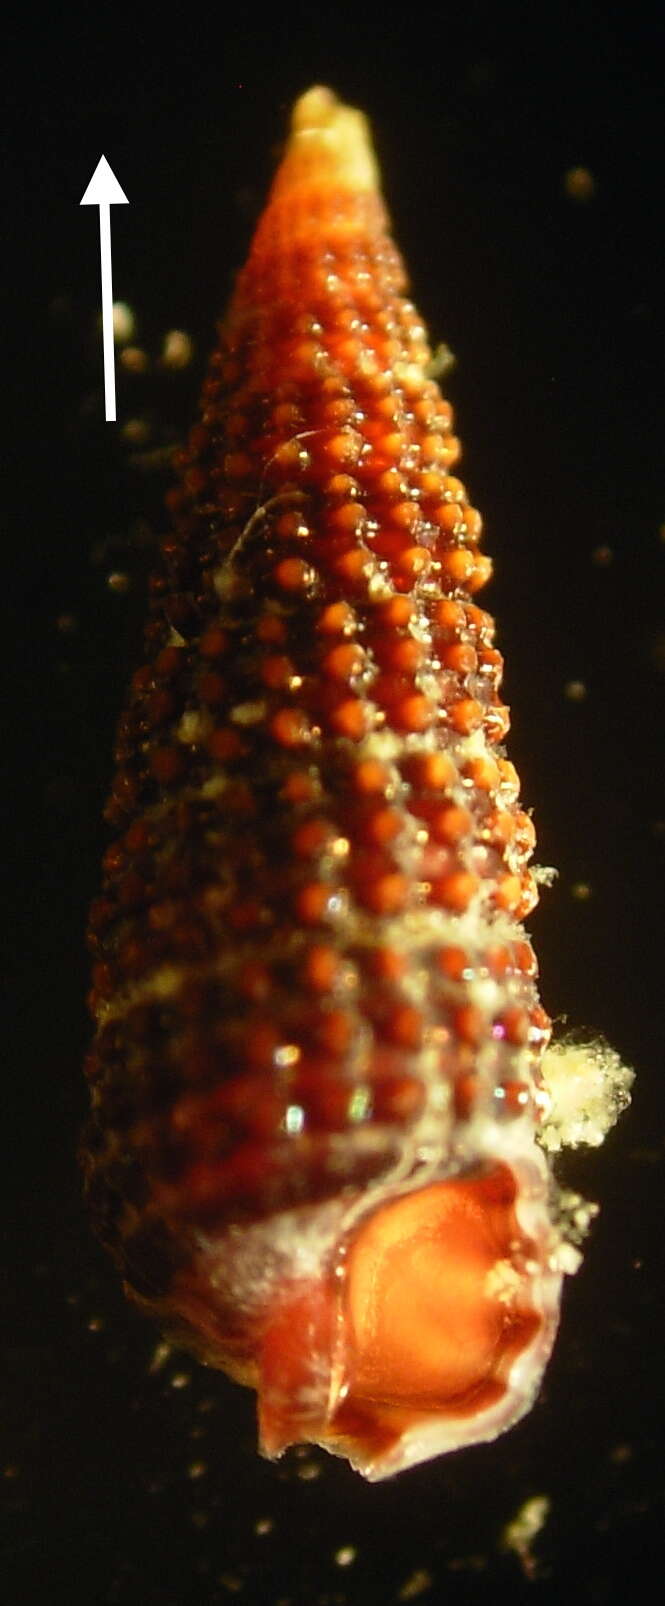 Image of Cerithiopsis tubercularis (Montagu 1803)